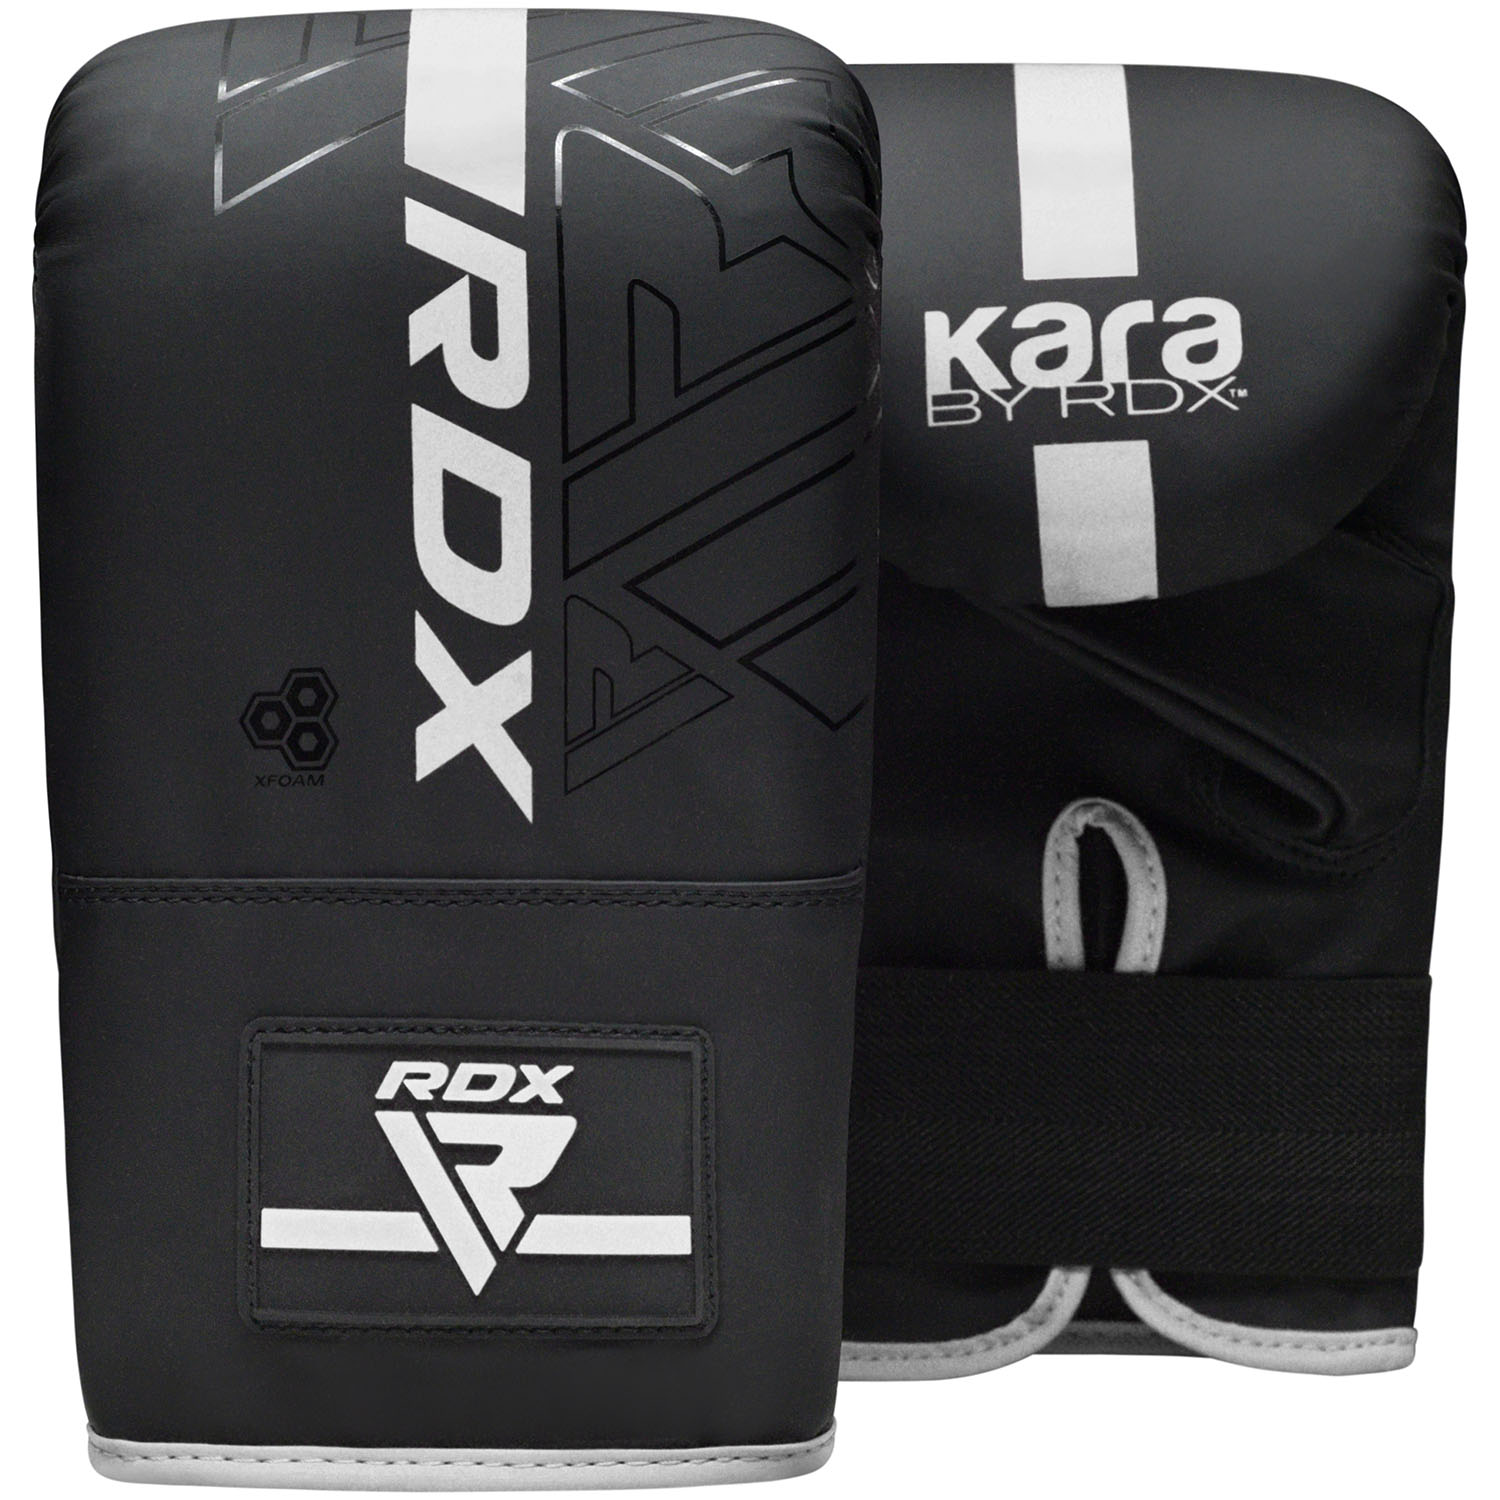 RDX Sandsackhandschuhe, Kara Series F6, schwarz-weiß